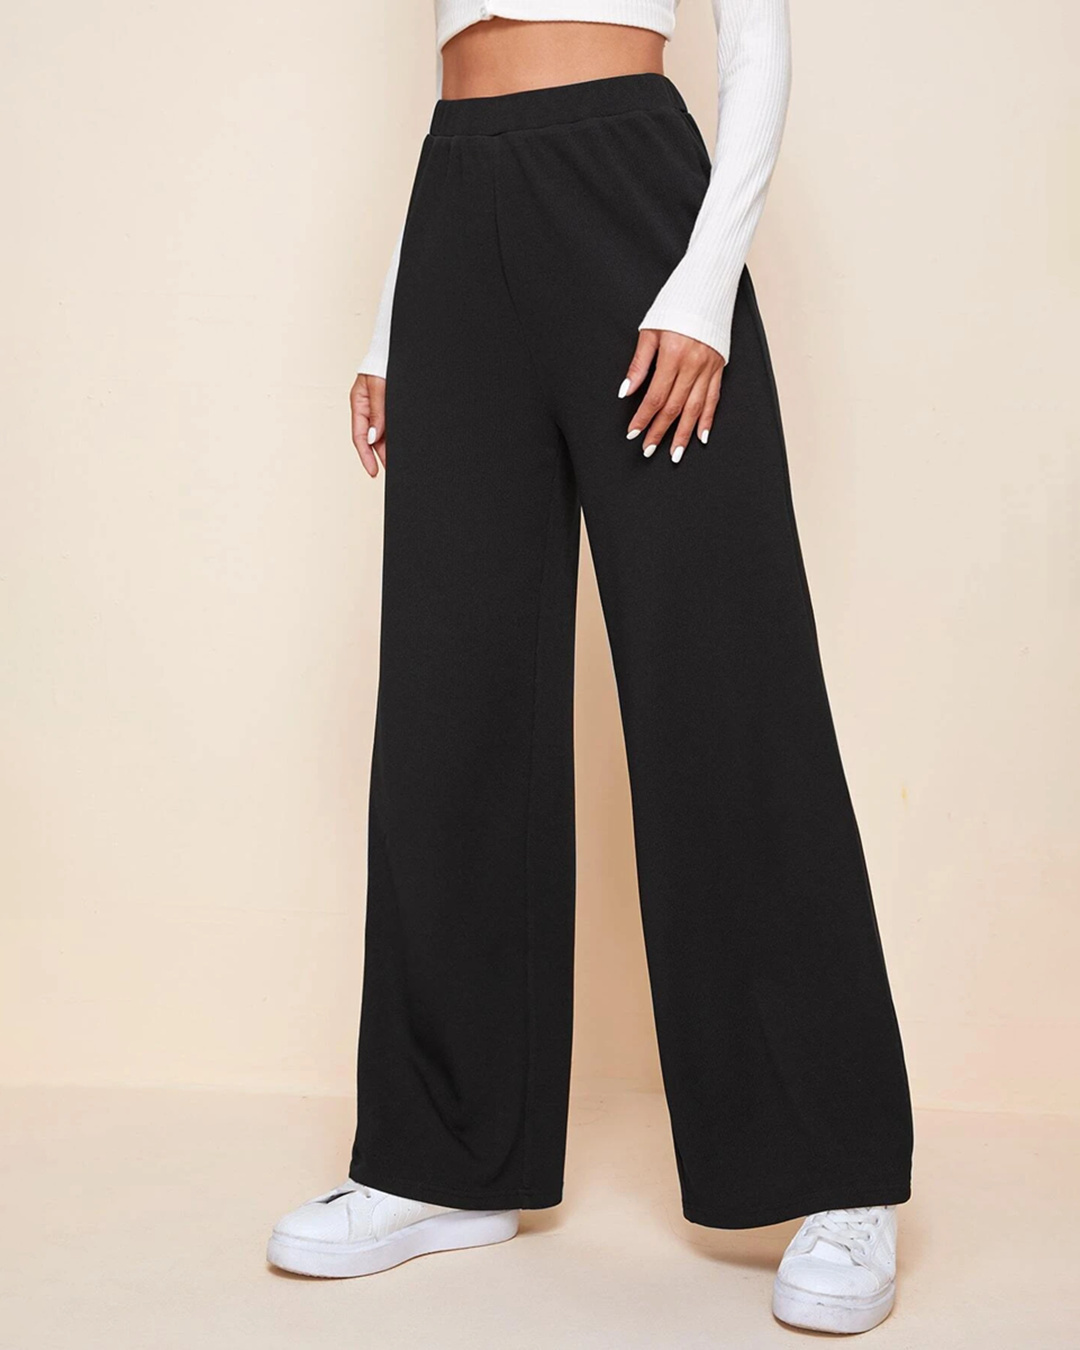 Buy Women's Black Oversized Wide Leg Korean Pants Online at Bewakoof